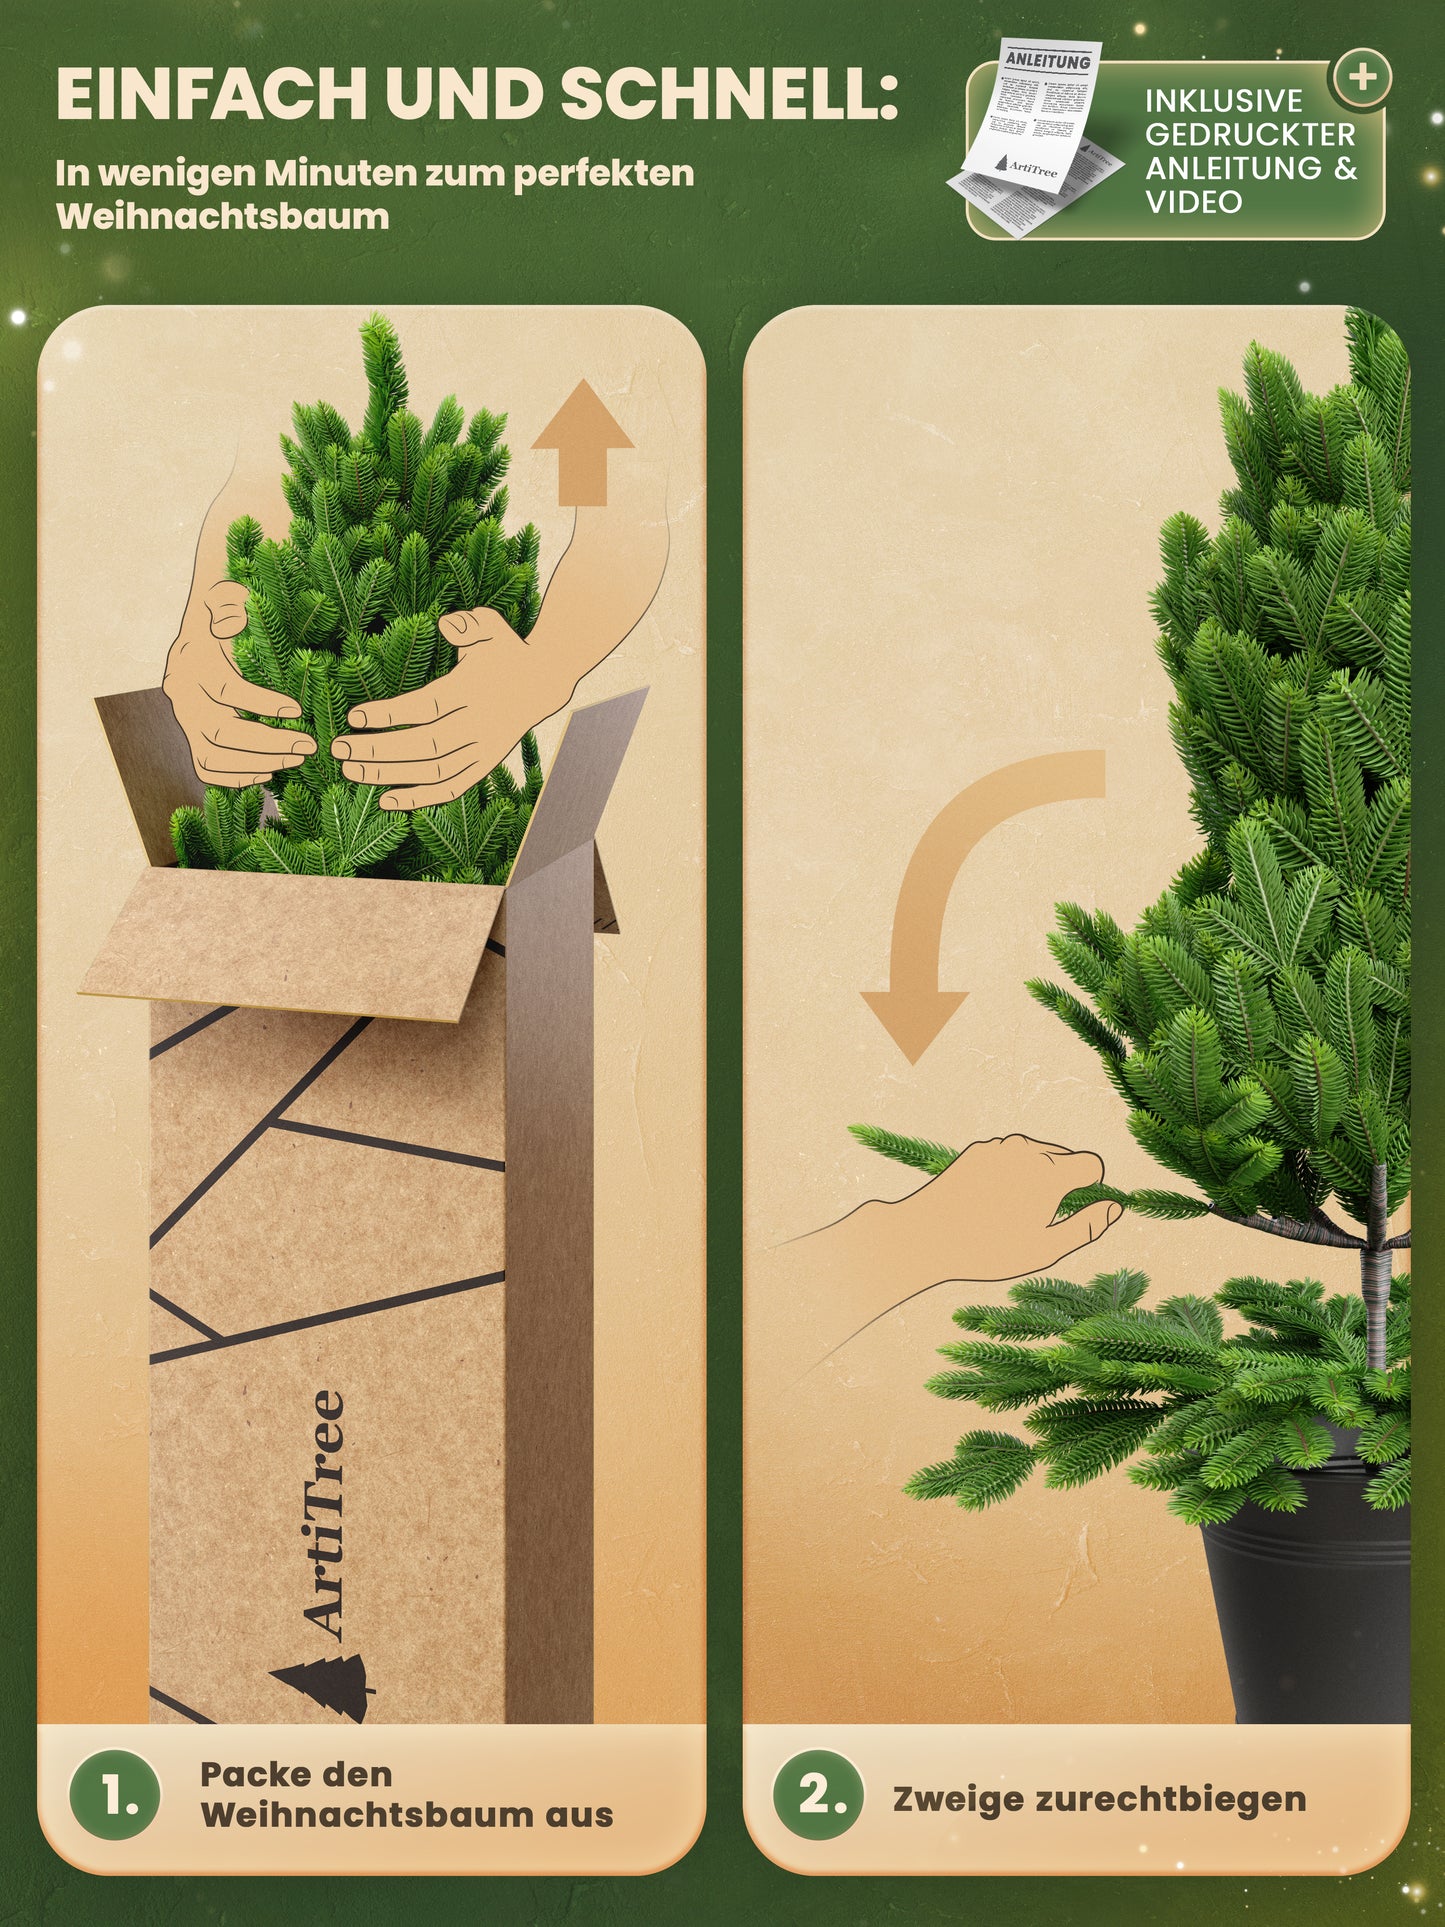 ArtiTree® Künstlicher Weihnachtsbaum - Premium Tanne im Topf 80cm